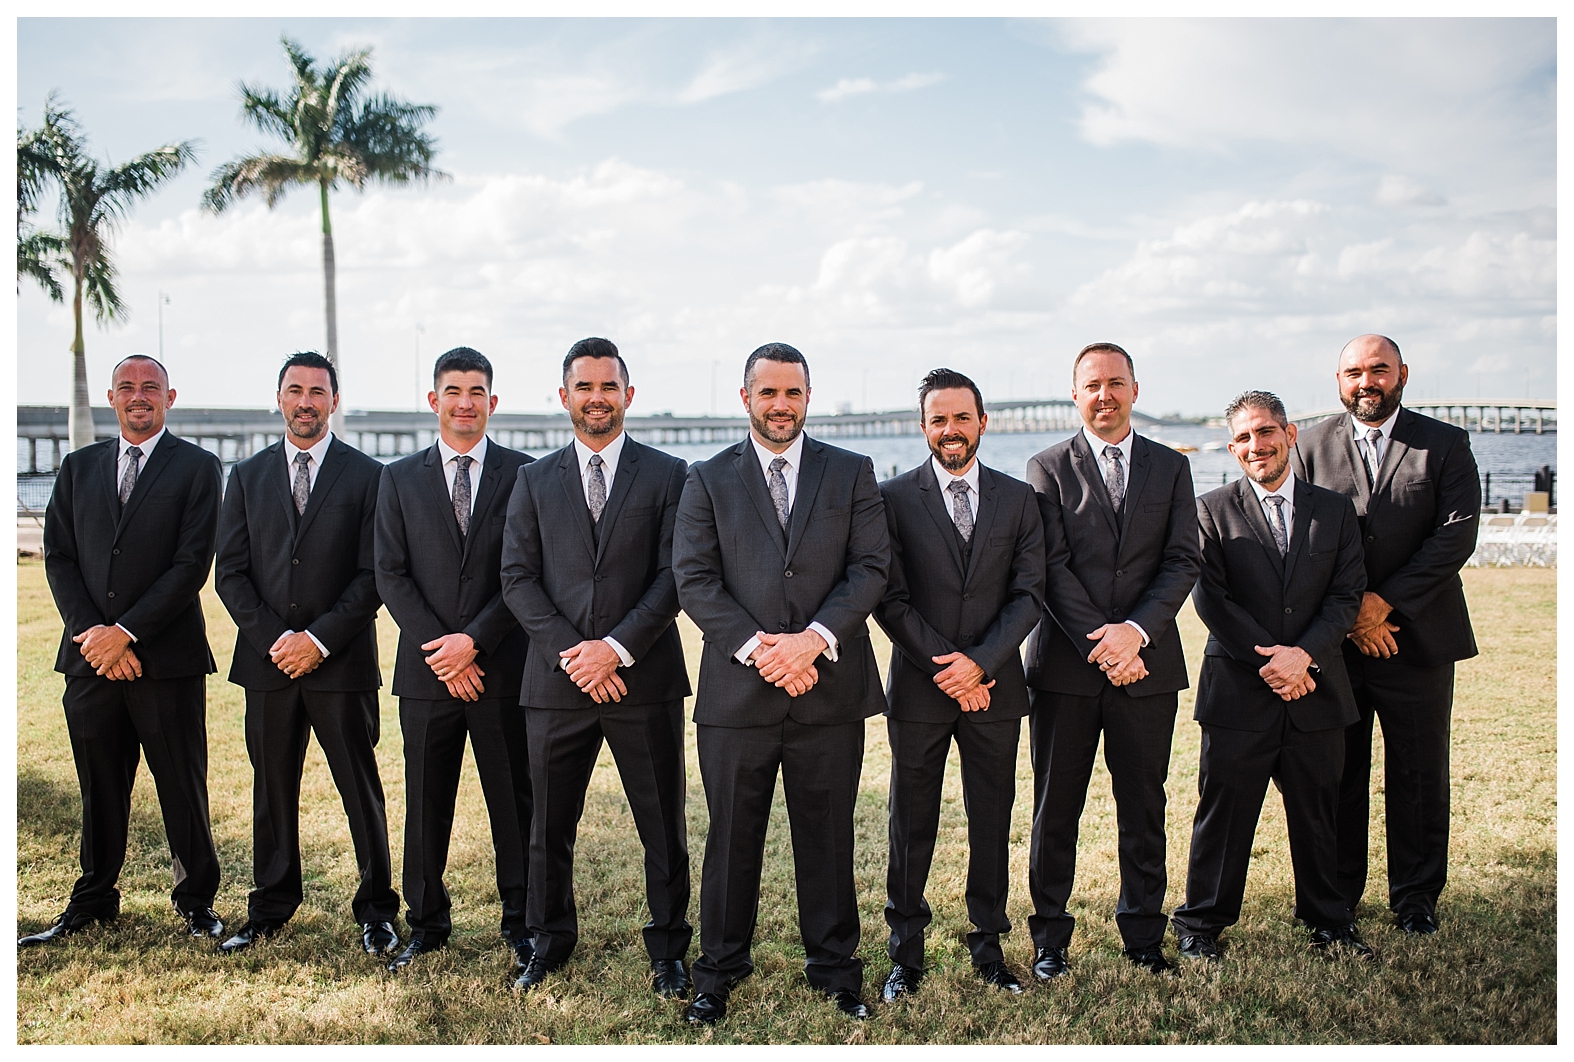 florida groom, groom, groom and groomsmen attire, groom outfit, groomsmen outfit, gray groom suit, gray groomsmen suit, groom outfit